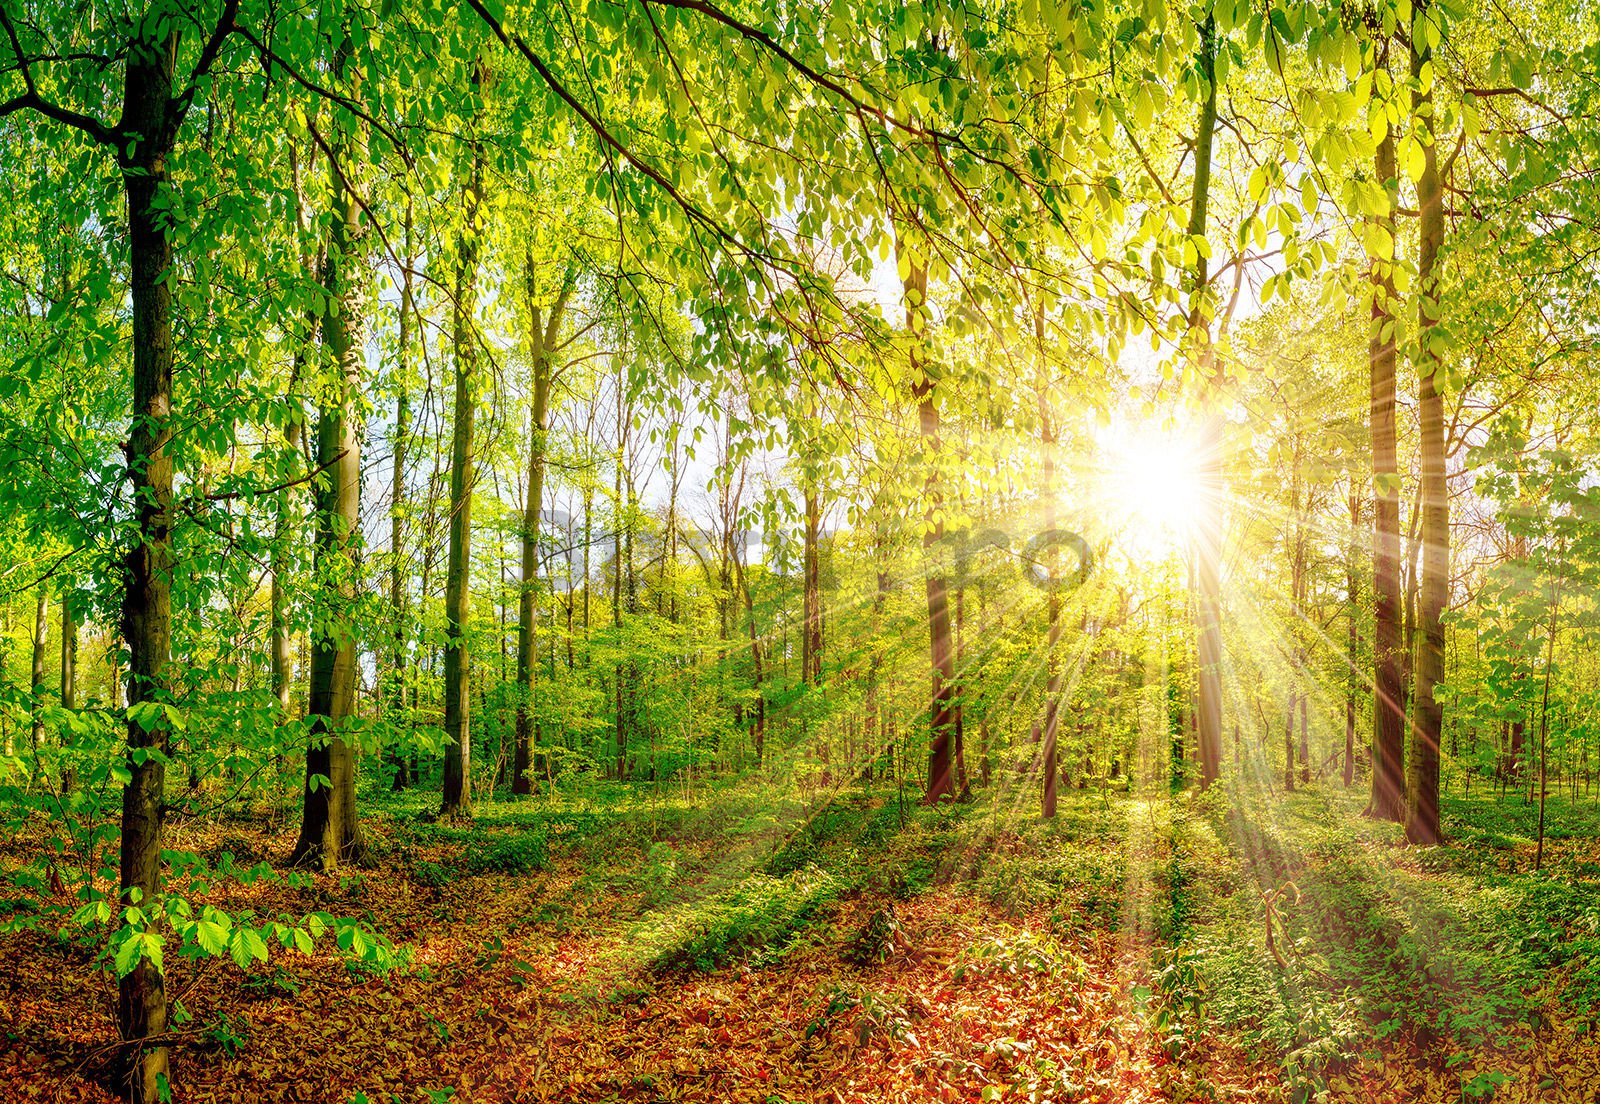 Fototapet vlies: Soare în pădure - 368x254 cm